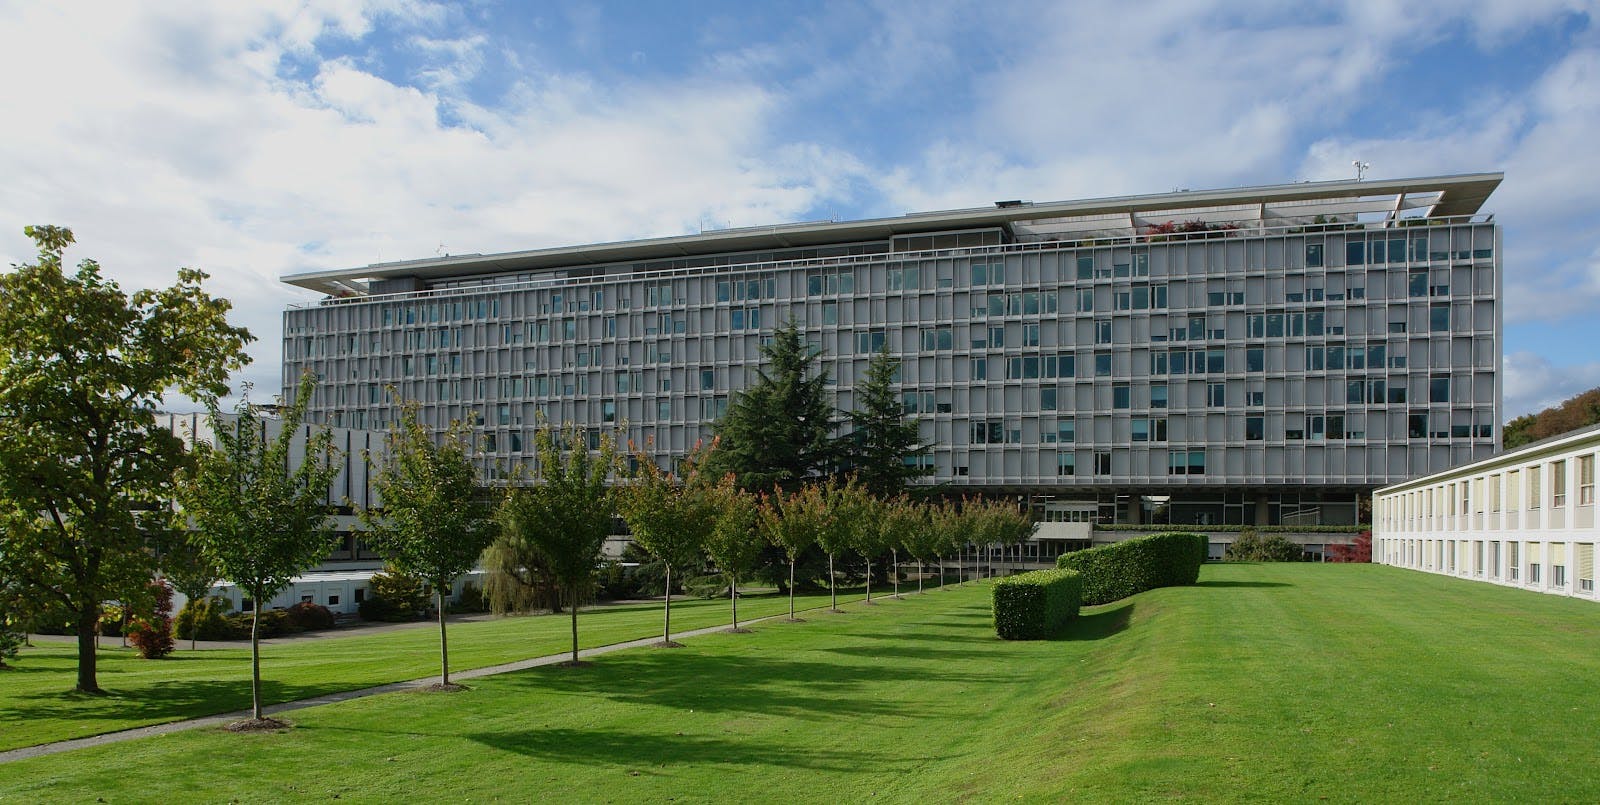 Siège de l'Organisation Mondiale de la Santé (OMS), situé à Genève en Suisse